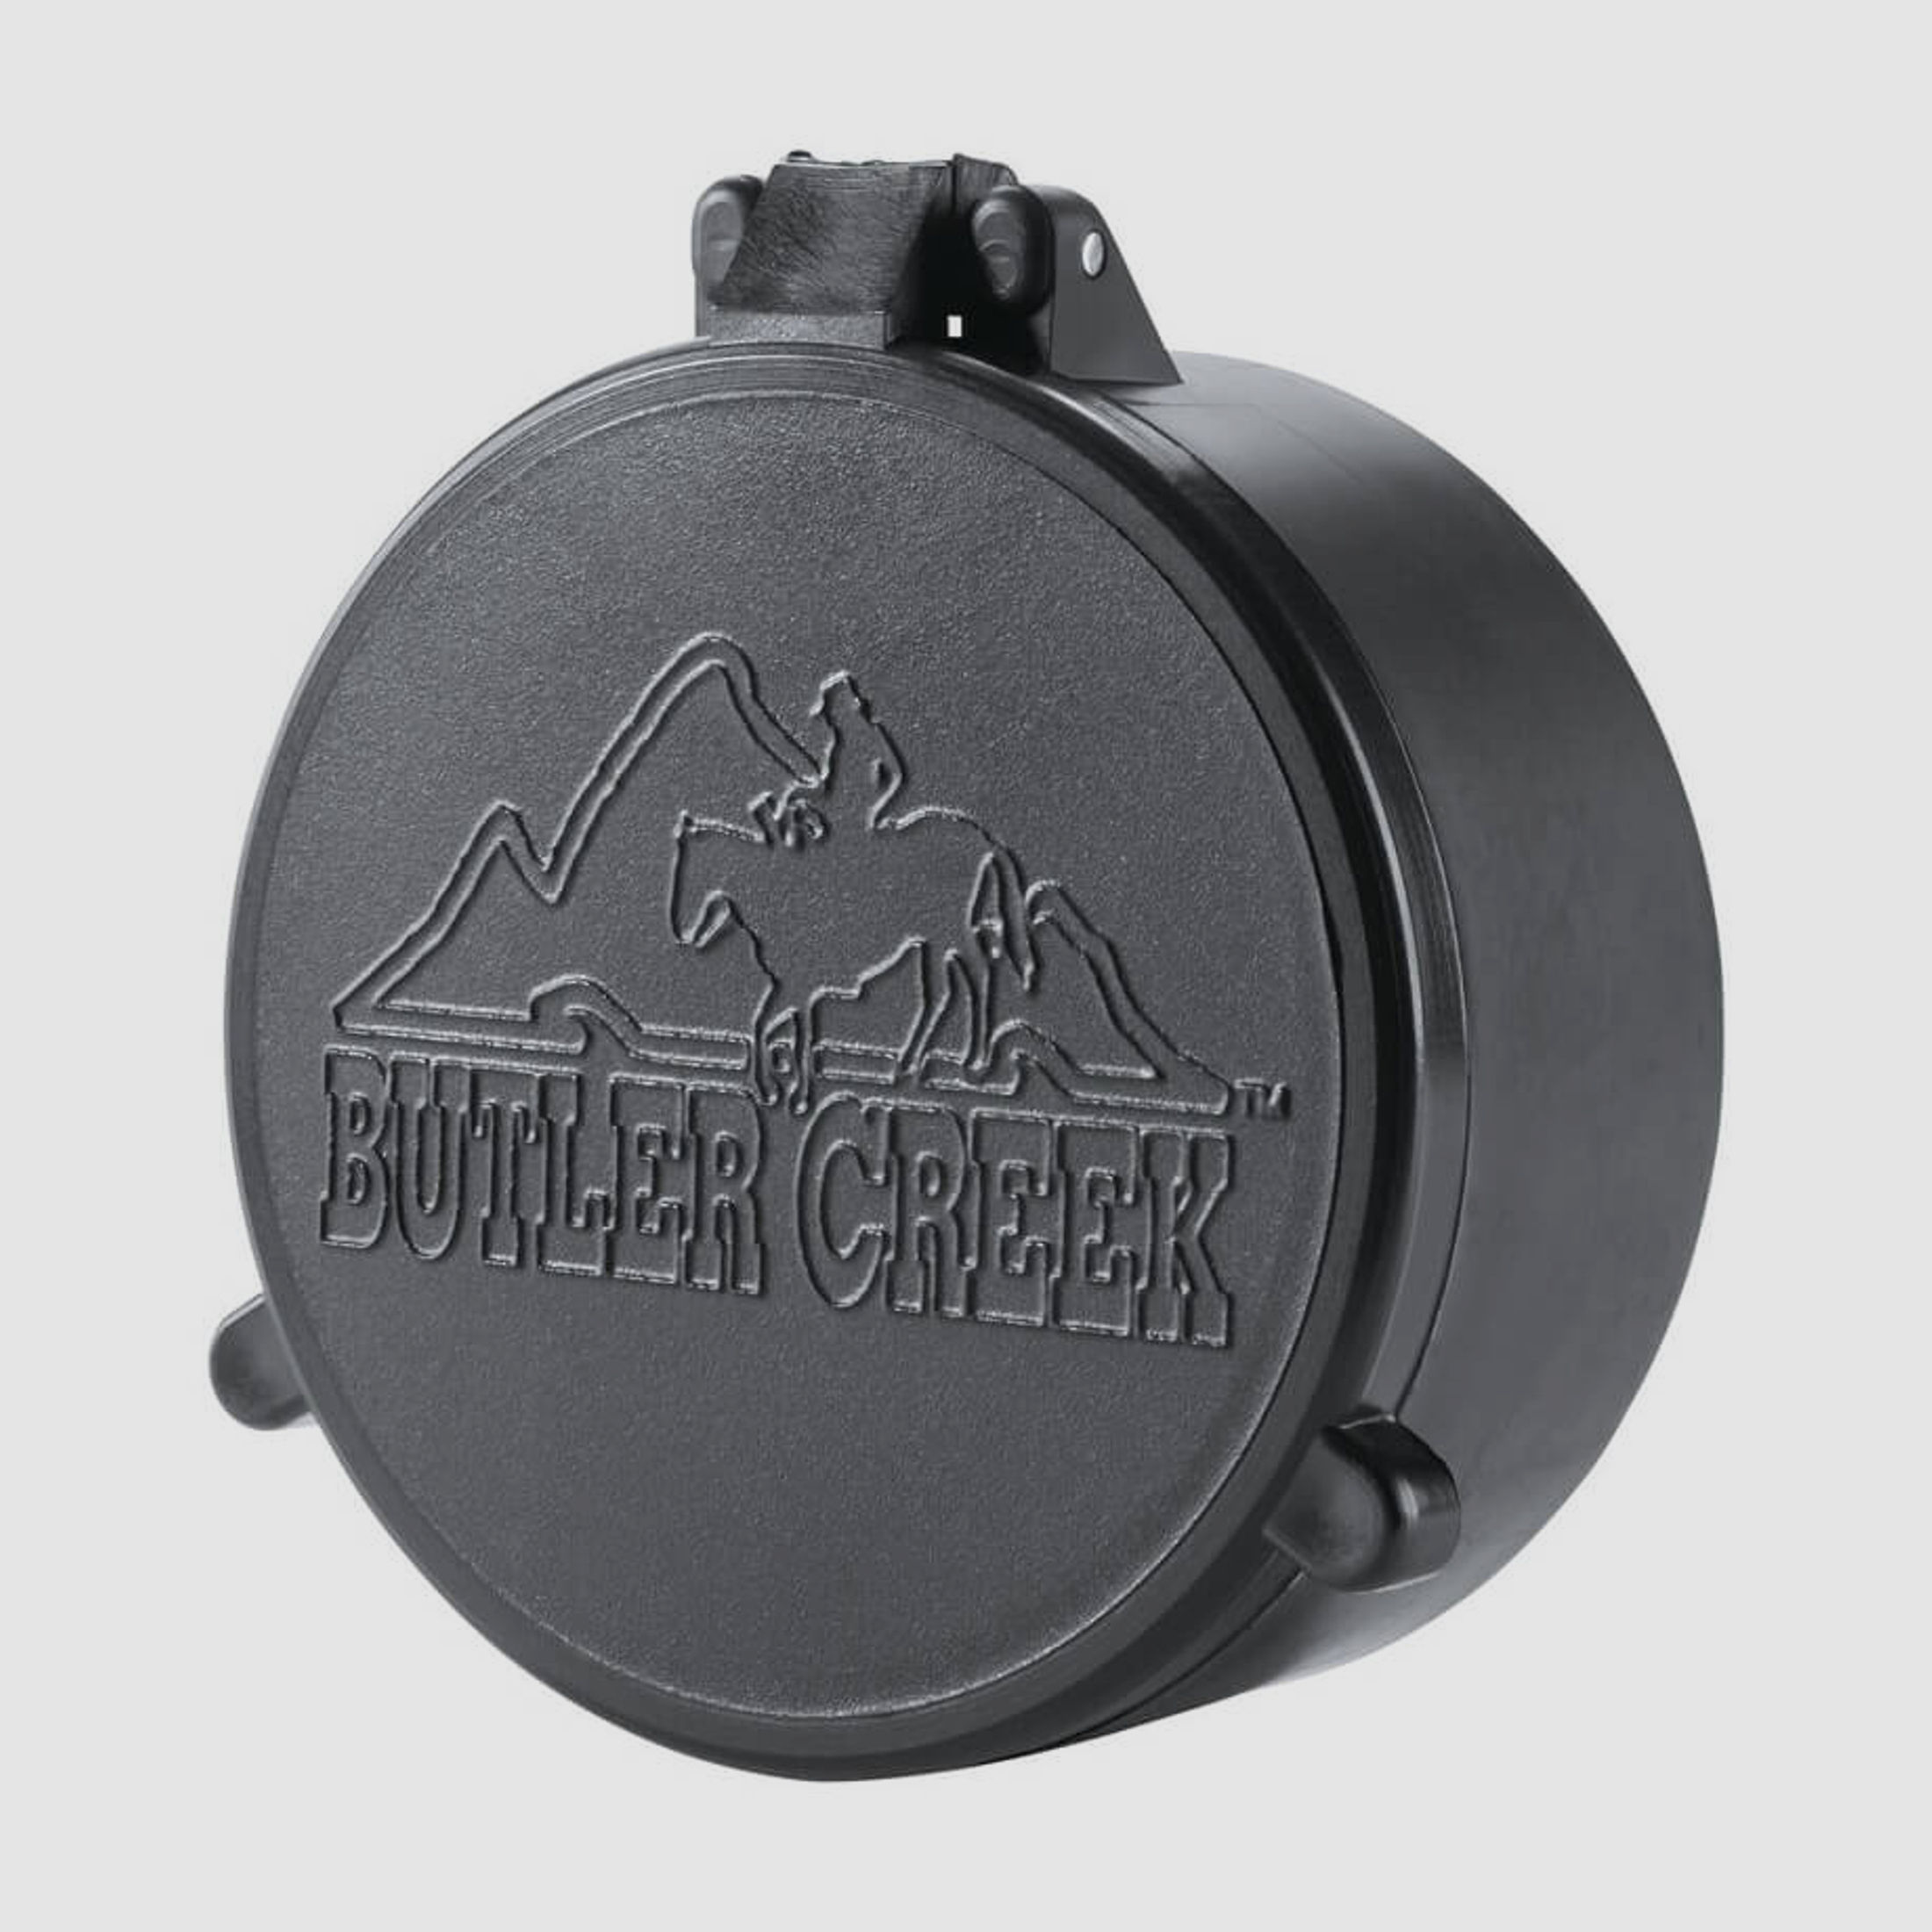 Butler Creek Objektiv Schutzkappe - 43,2mm